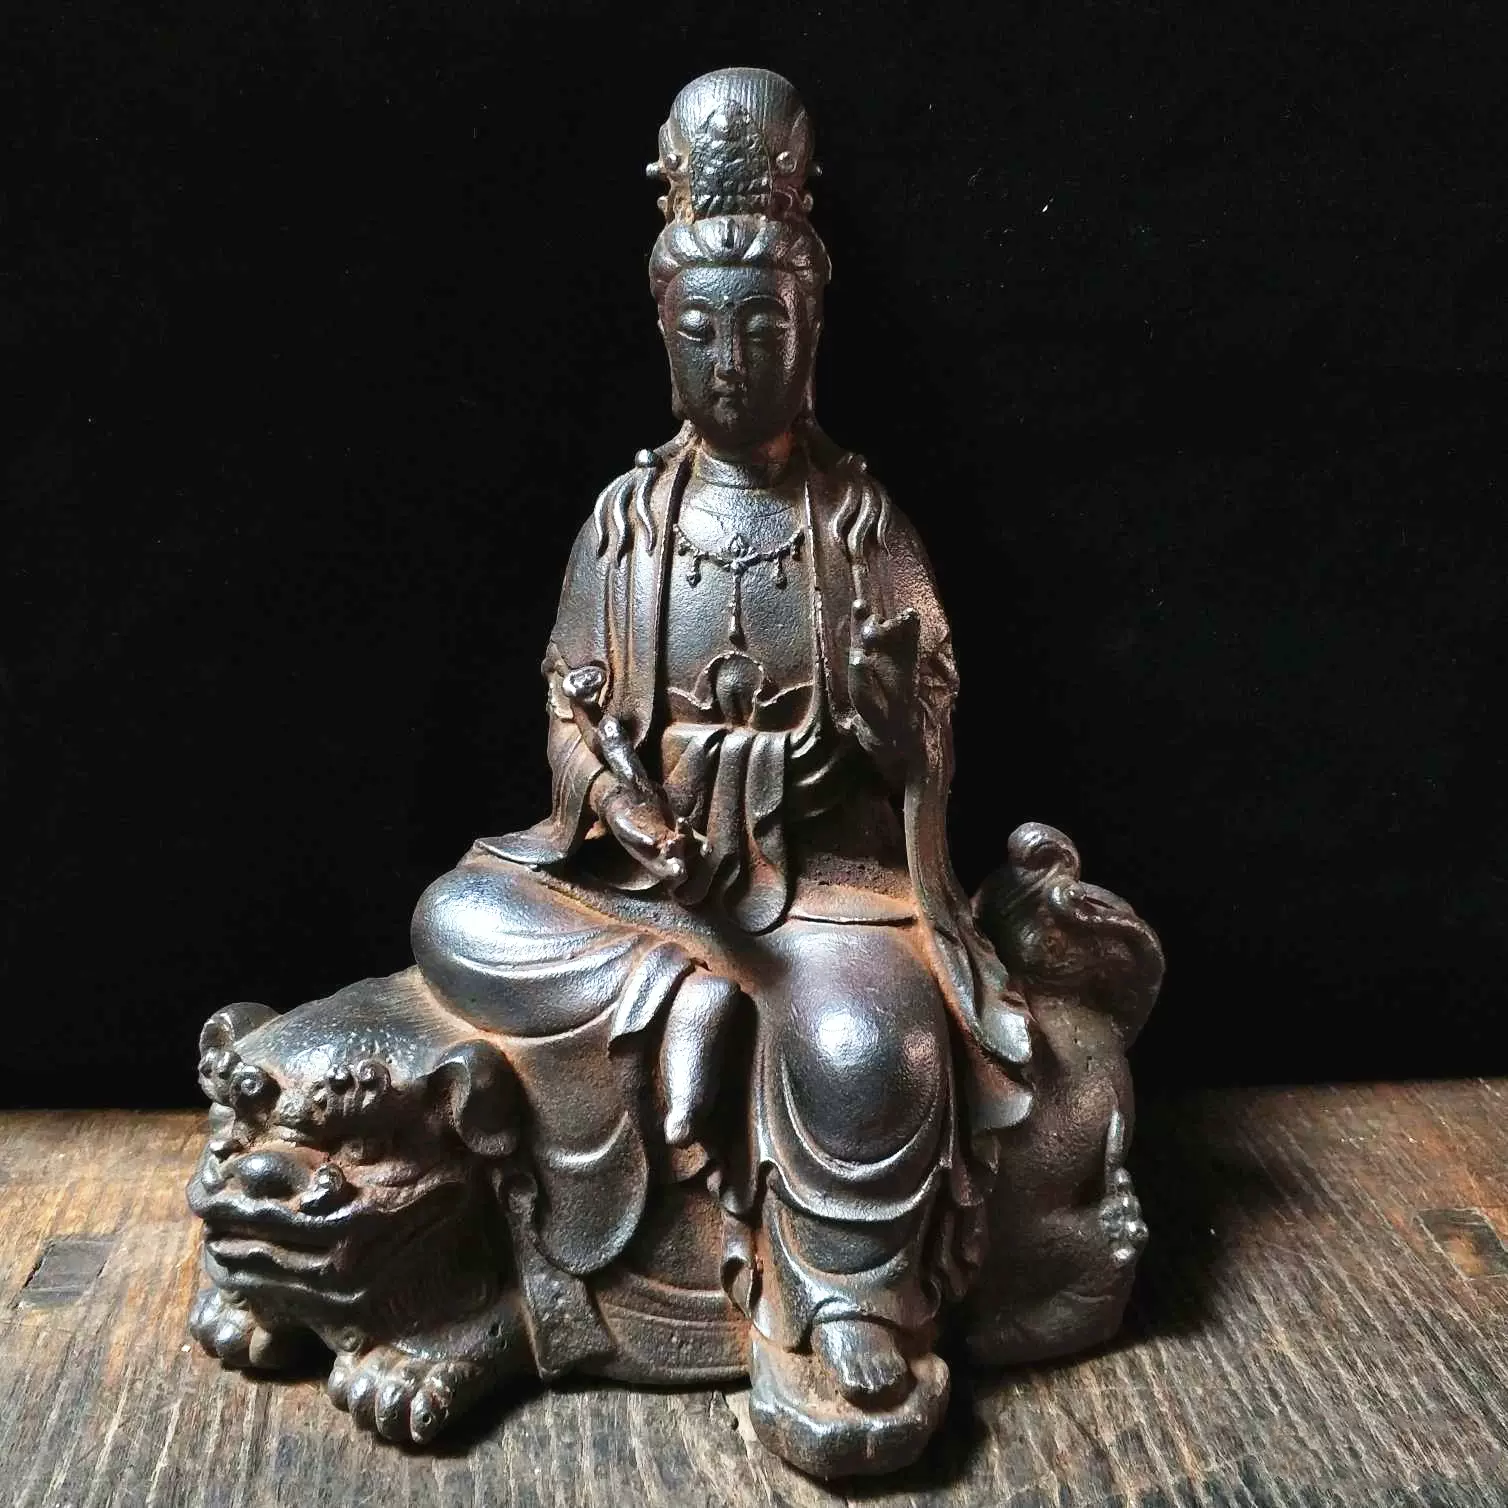 铁观音文殊普贤菩萨老铁器铁佛像神像古玩收藏佛像菩萨像-Taobao